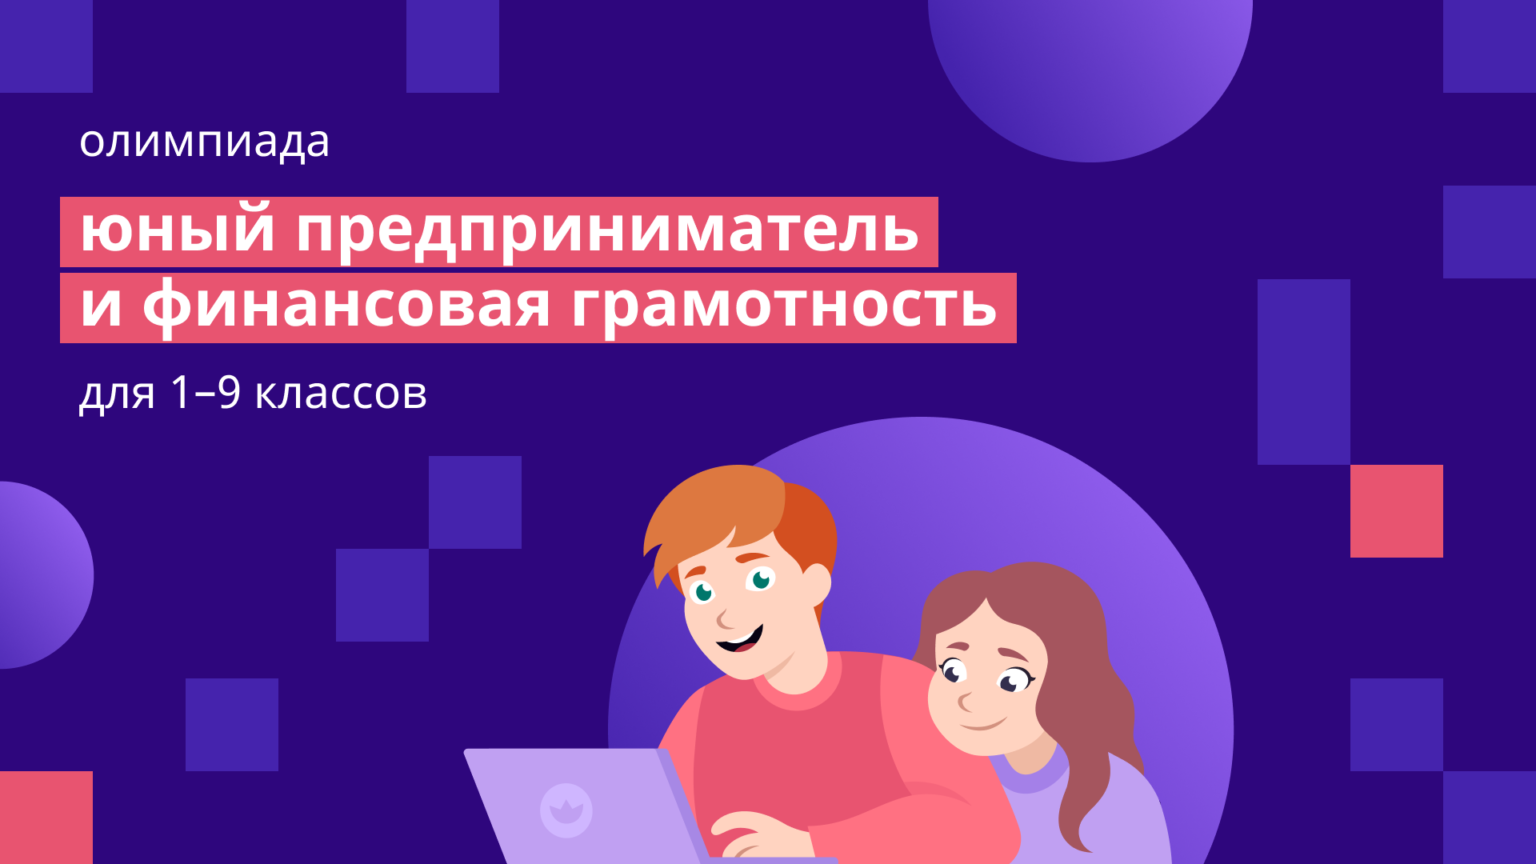 Всероссийская онлайн олимпиада по финансовой грамотности.